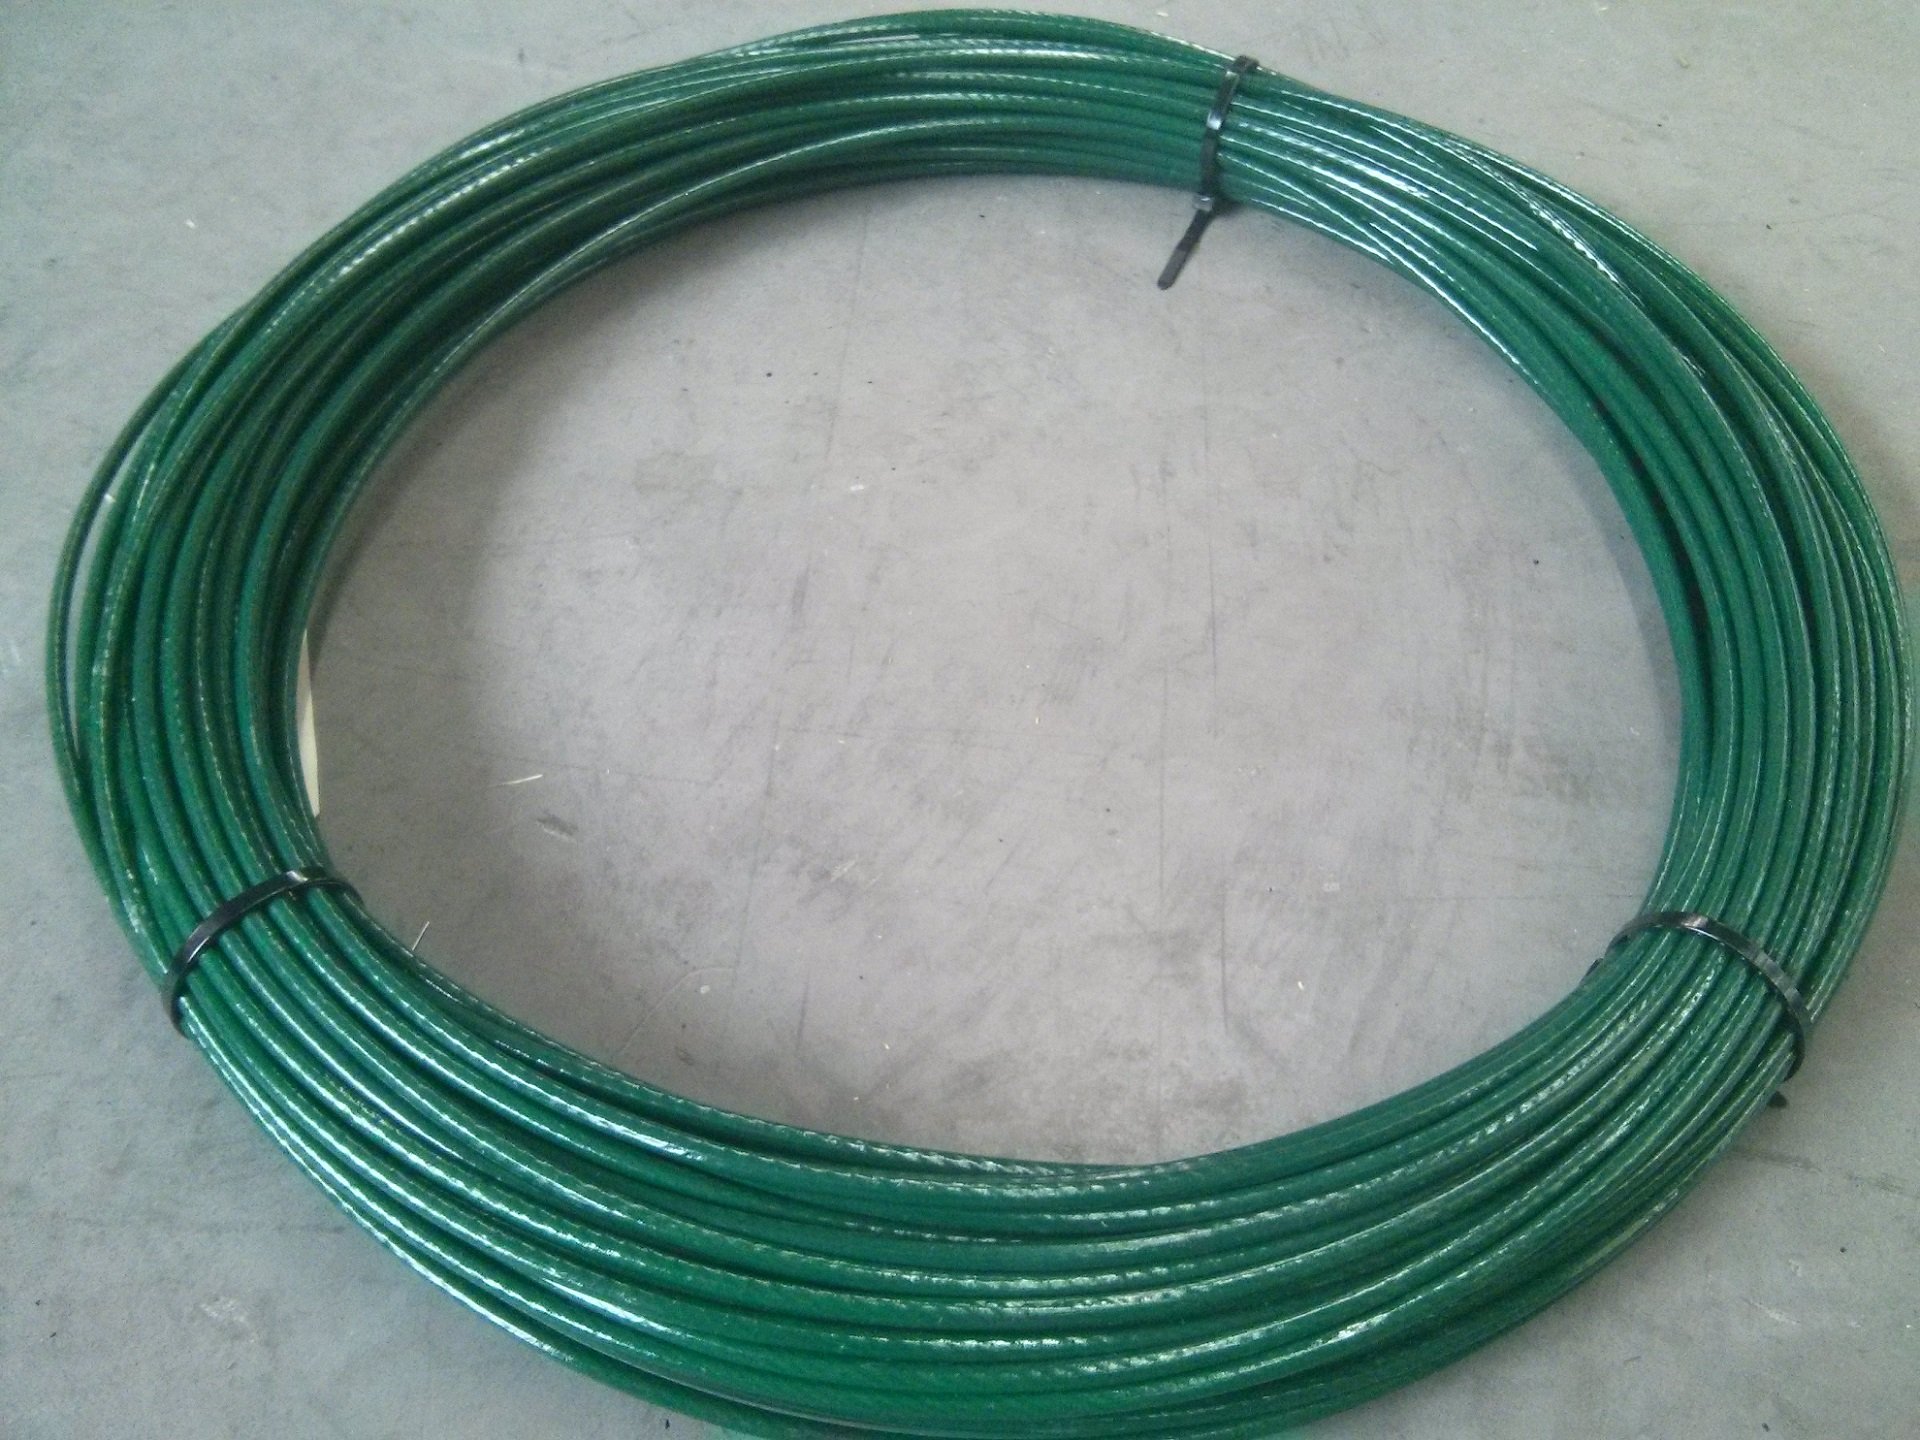 Câble acier PVC pour filet de sécurité - Ø 14 mm gaine incluse